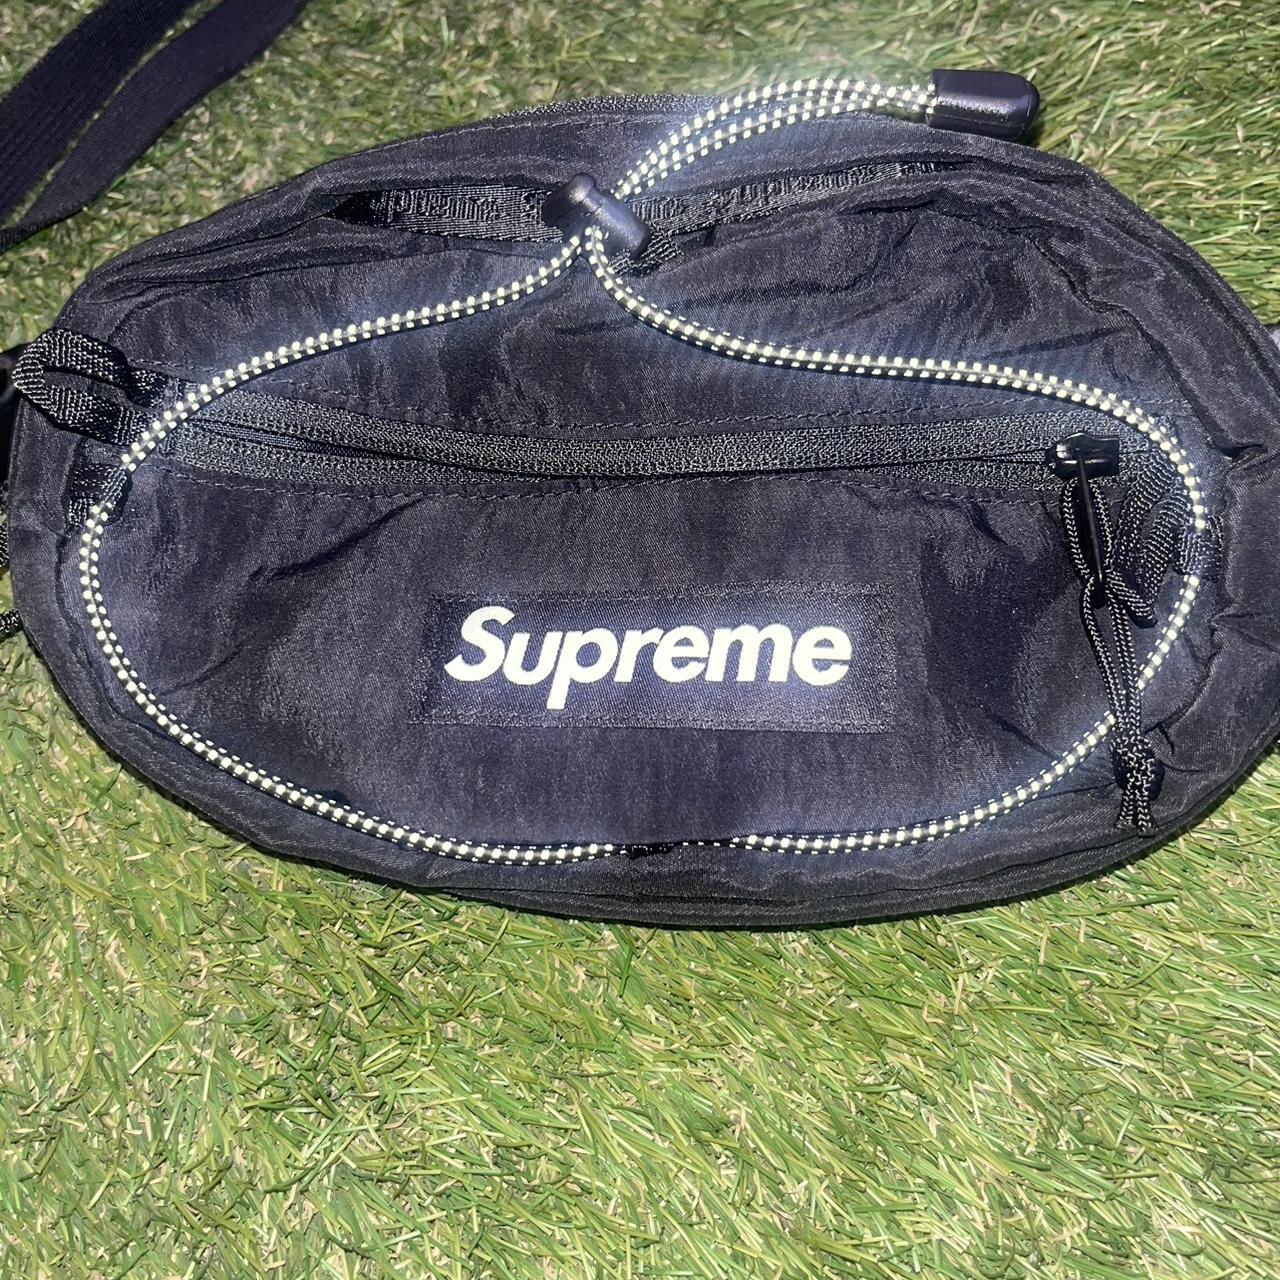 Supreme waist bag (FW20)